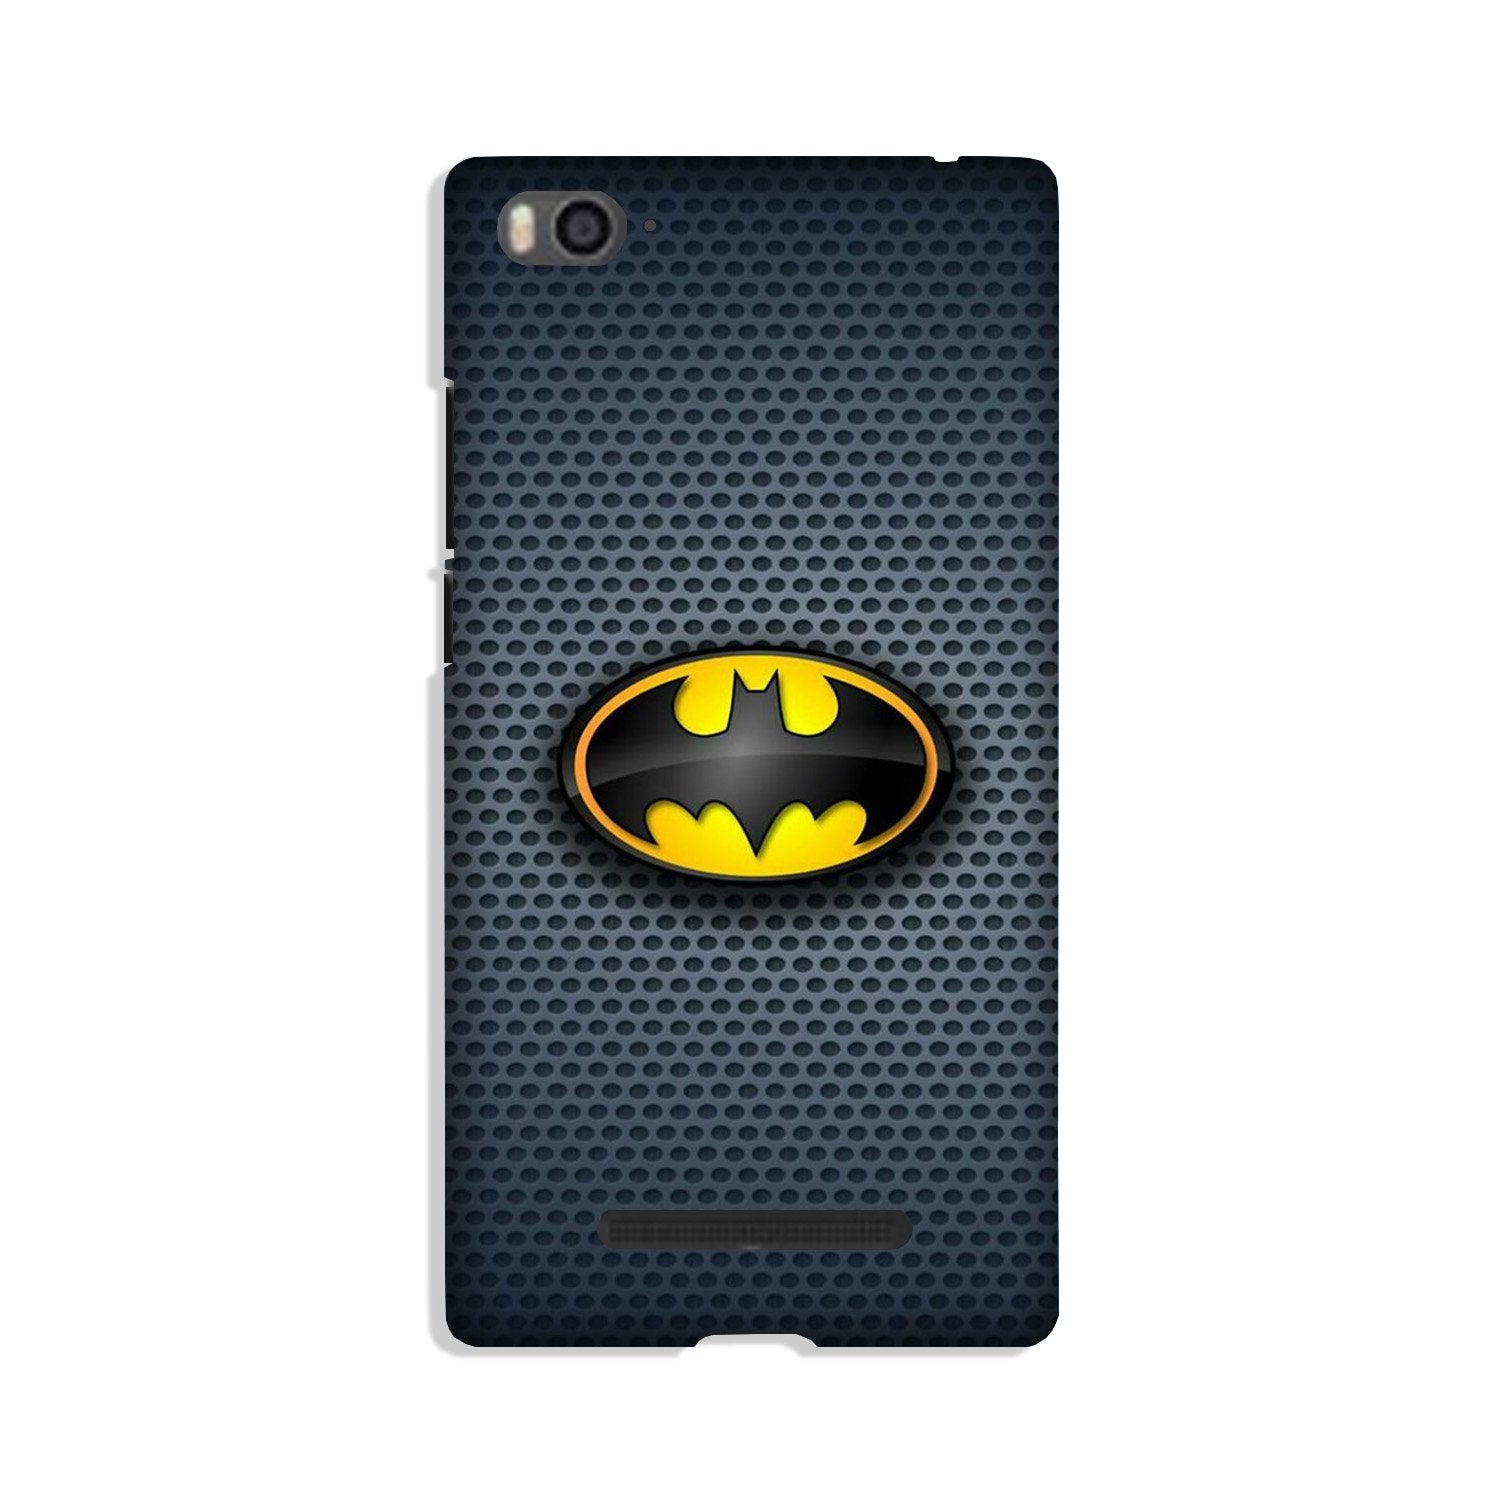 Batman Case for Xiaomi Mi 4i (Design No. 244)